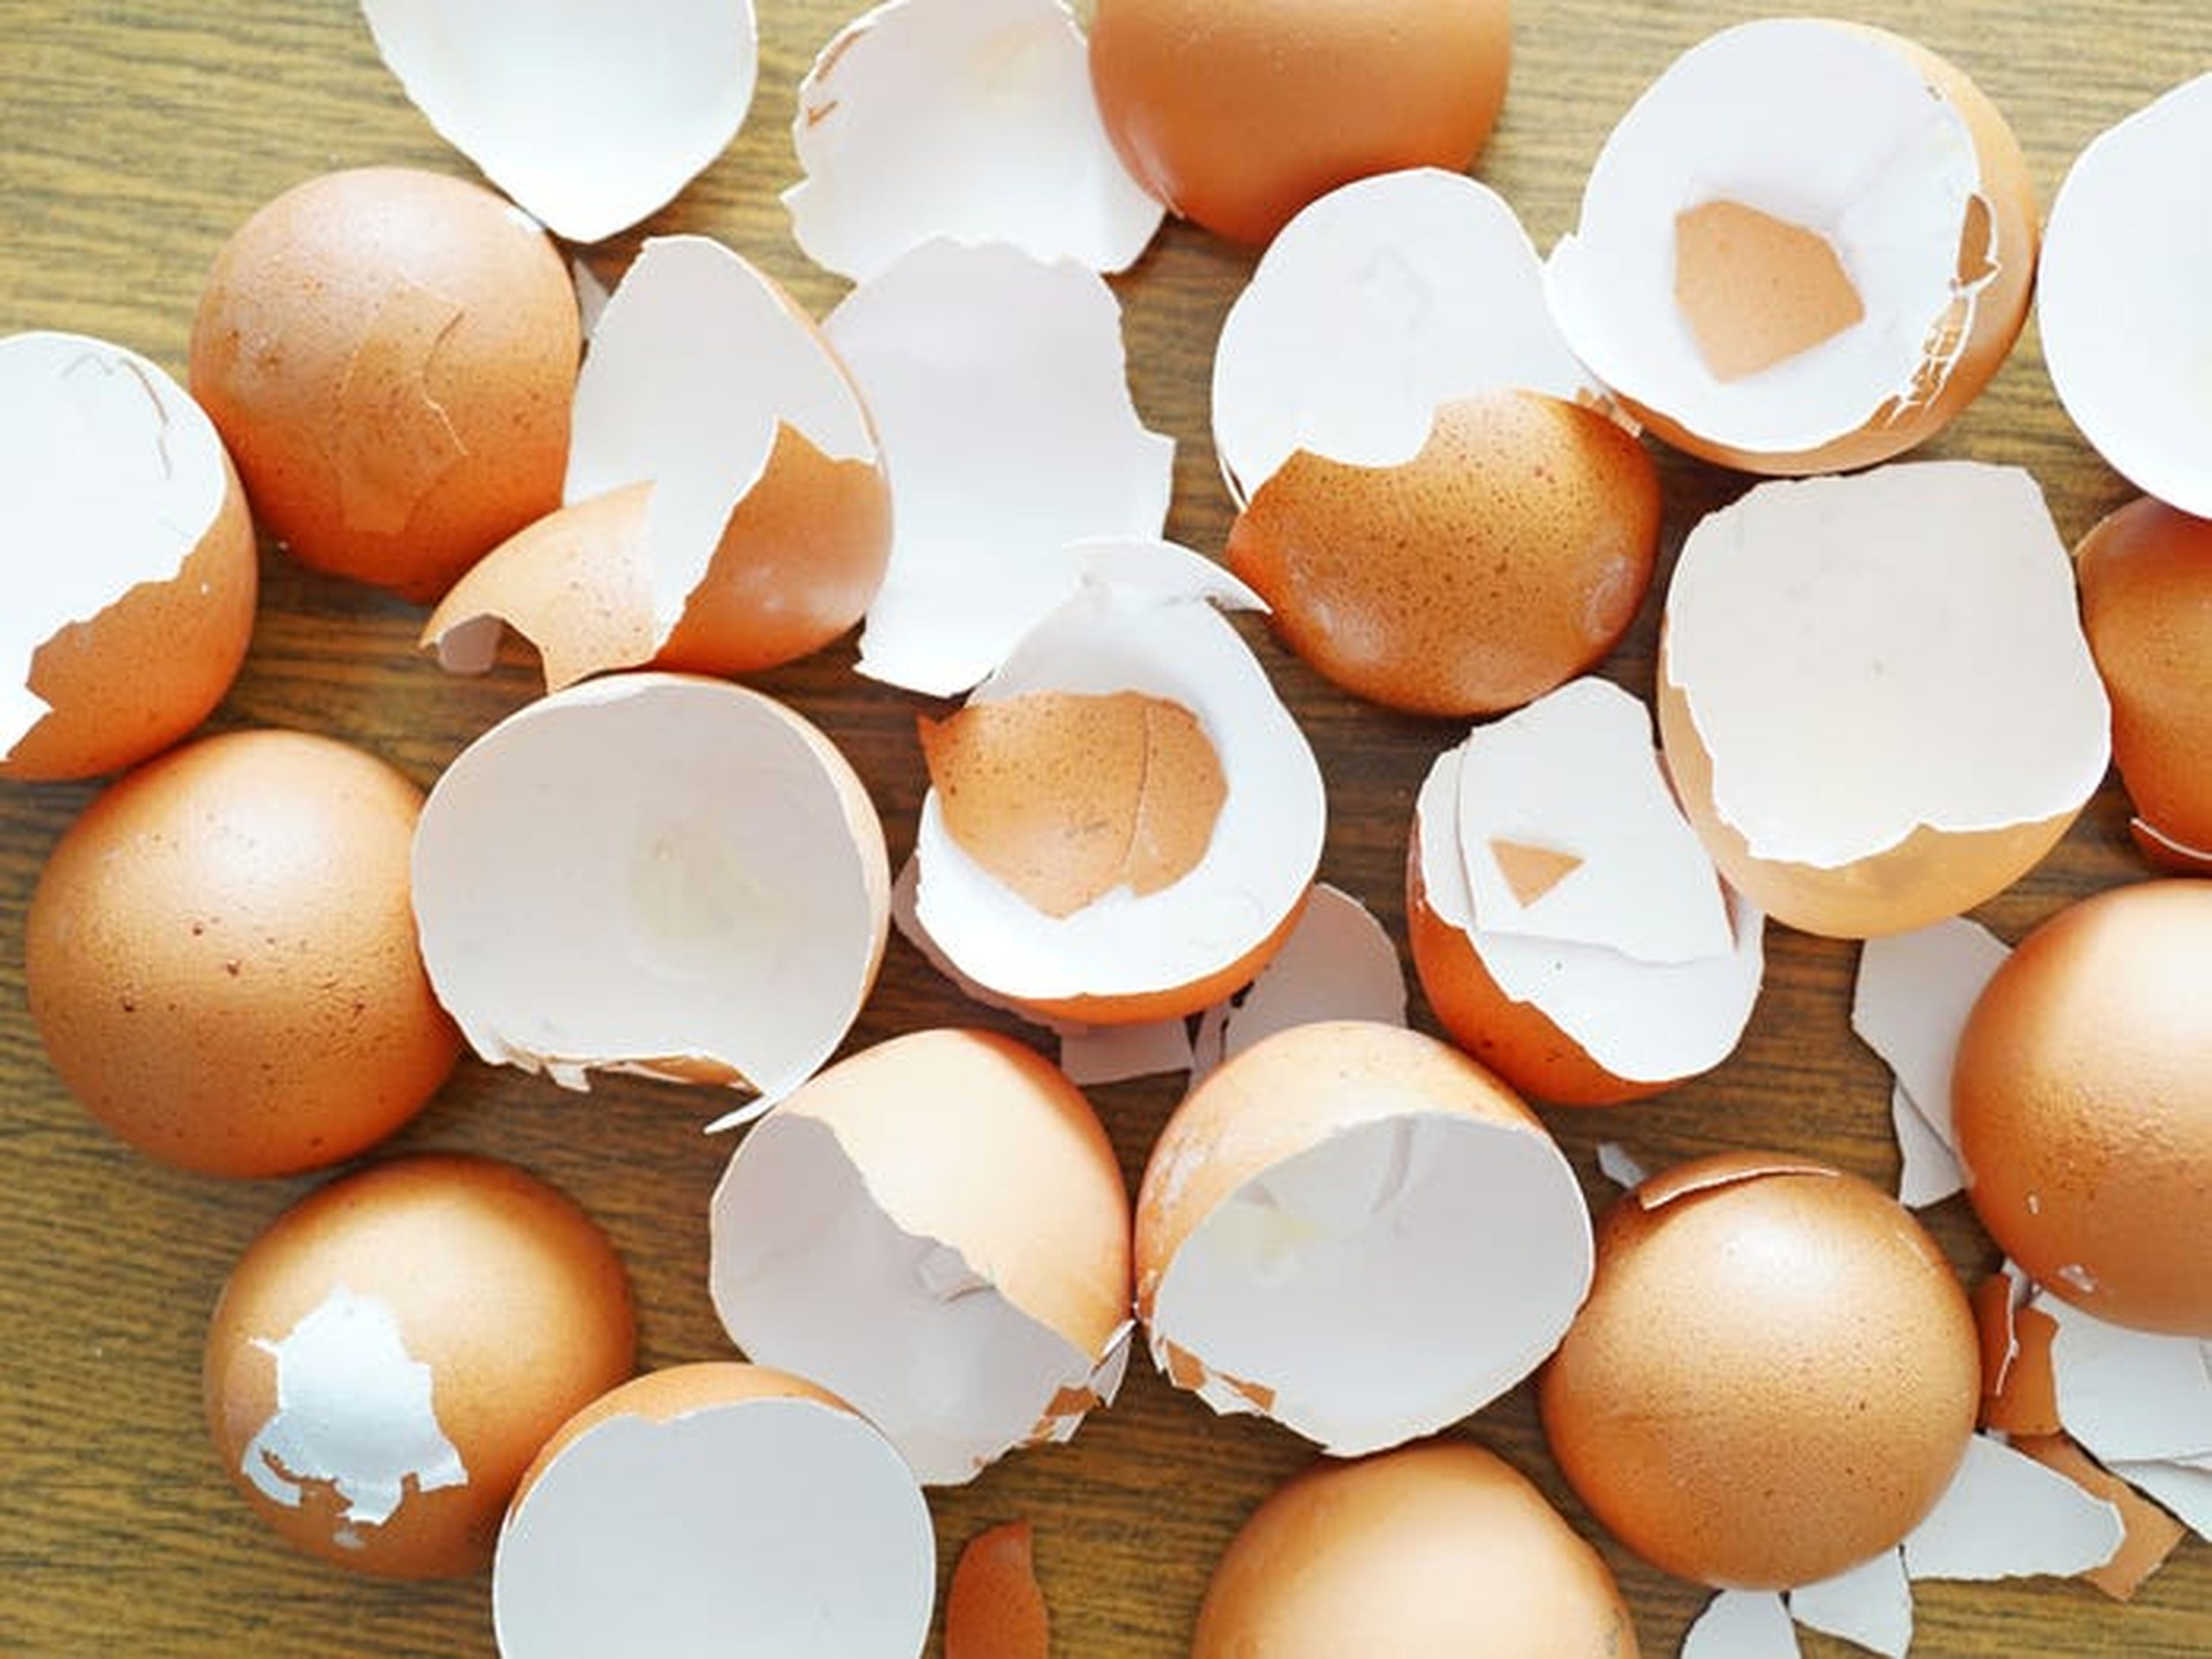 Las cáscaras de huevo se deben convertir en abono o tirarse a la basura orgánica.